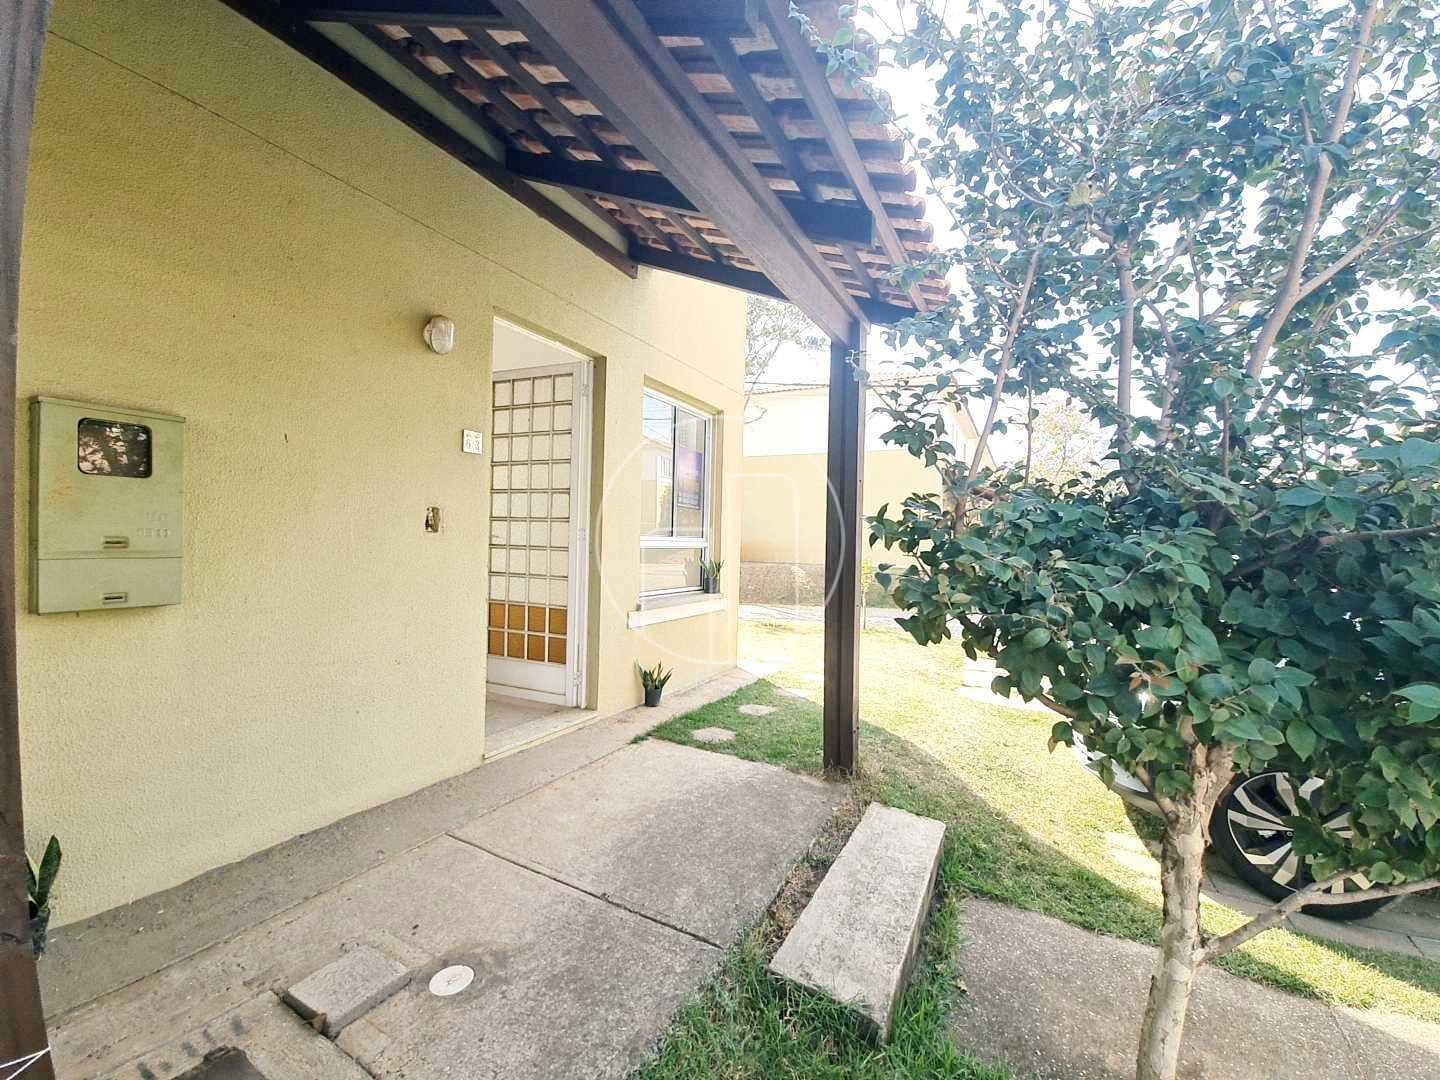 Piccoloto -Casa à venda no Jardim Interlagos em Hortolândia